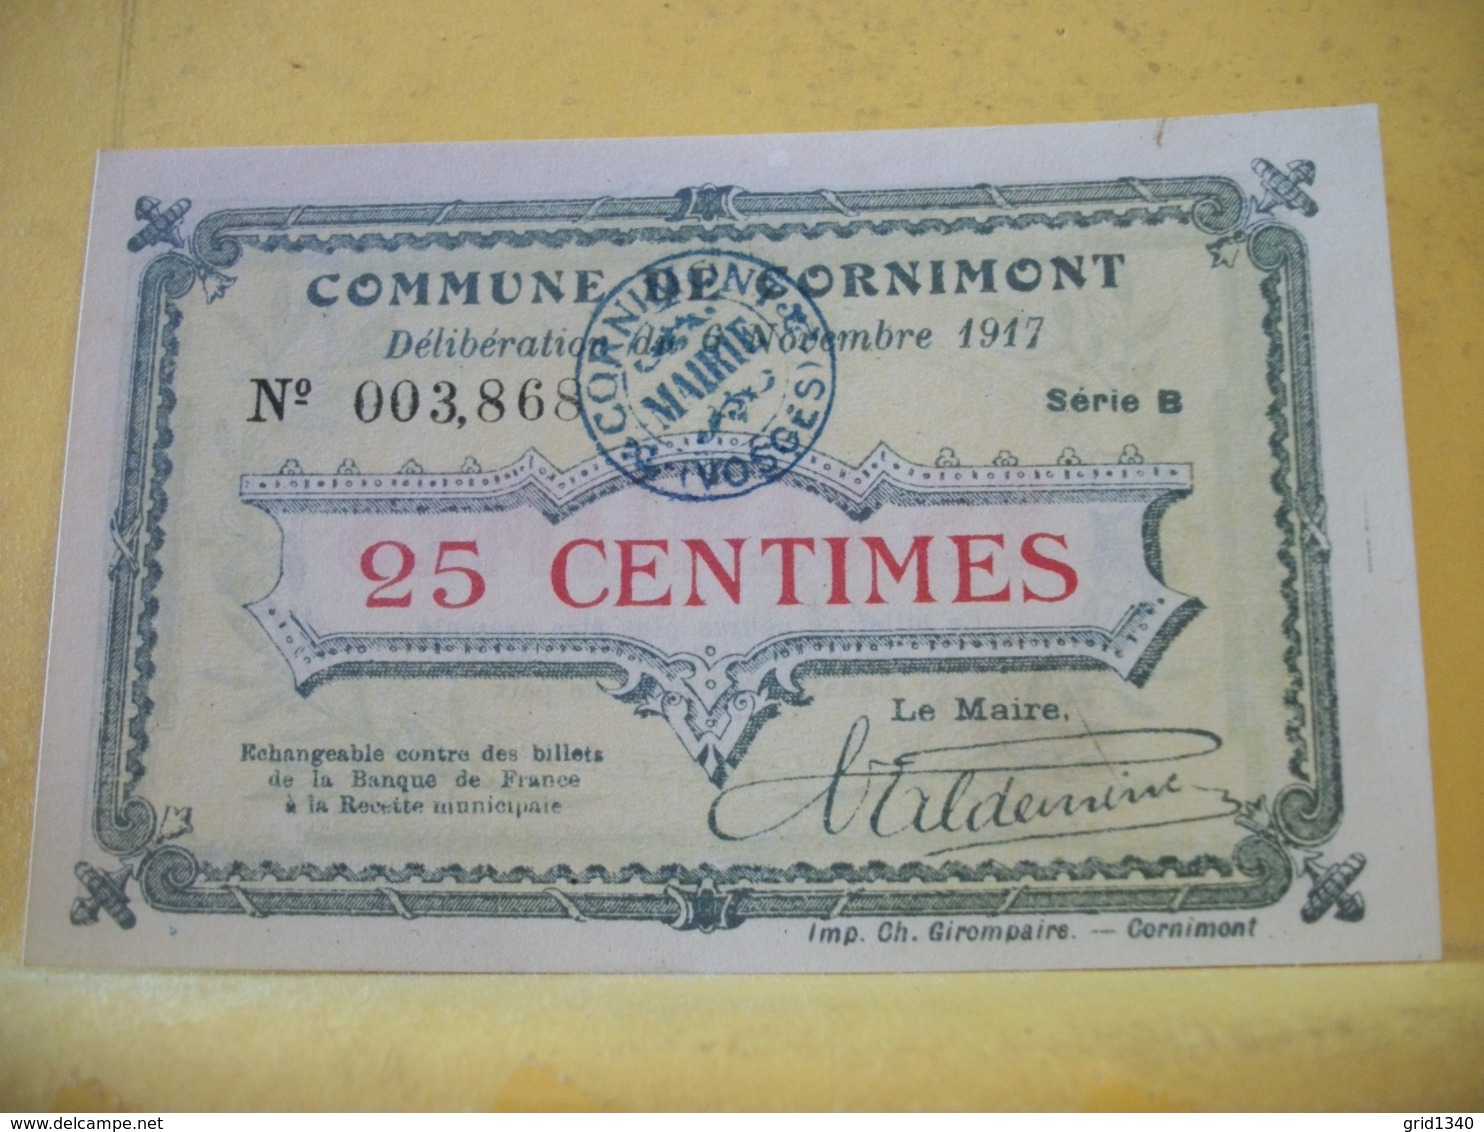 A 2241 - 88 COMMUNE DE CORNIMONT. 25 CENTIMES. 6 NOVEMBRE 1917 SERIE B N° 003,86 - Bons & Nécessité